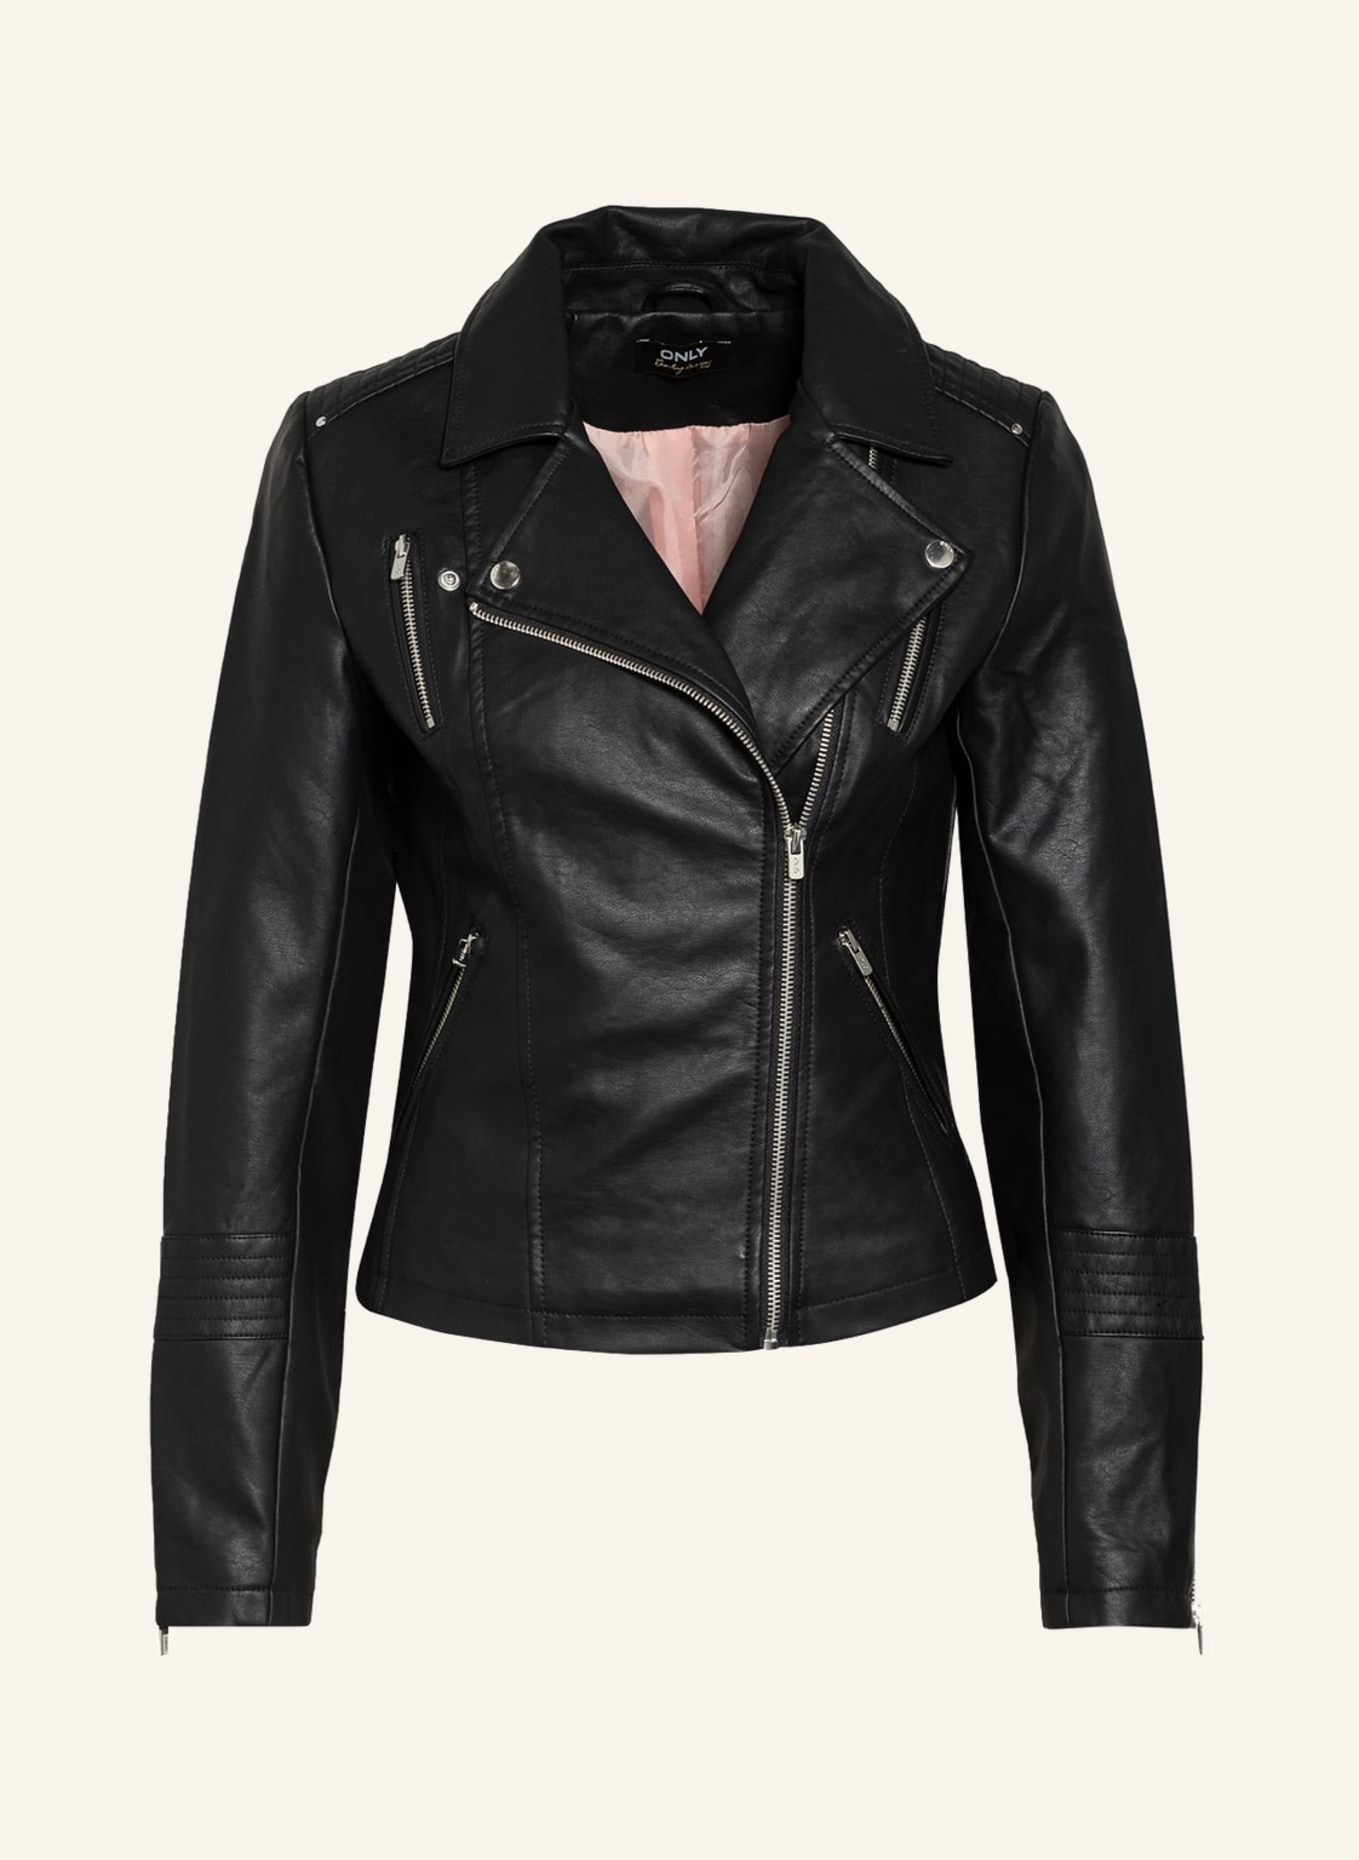 ONLY Biker jacket in leather look, Color: BLACK (Image 1)